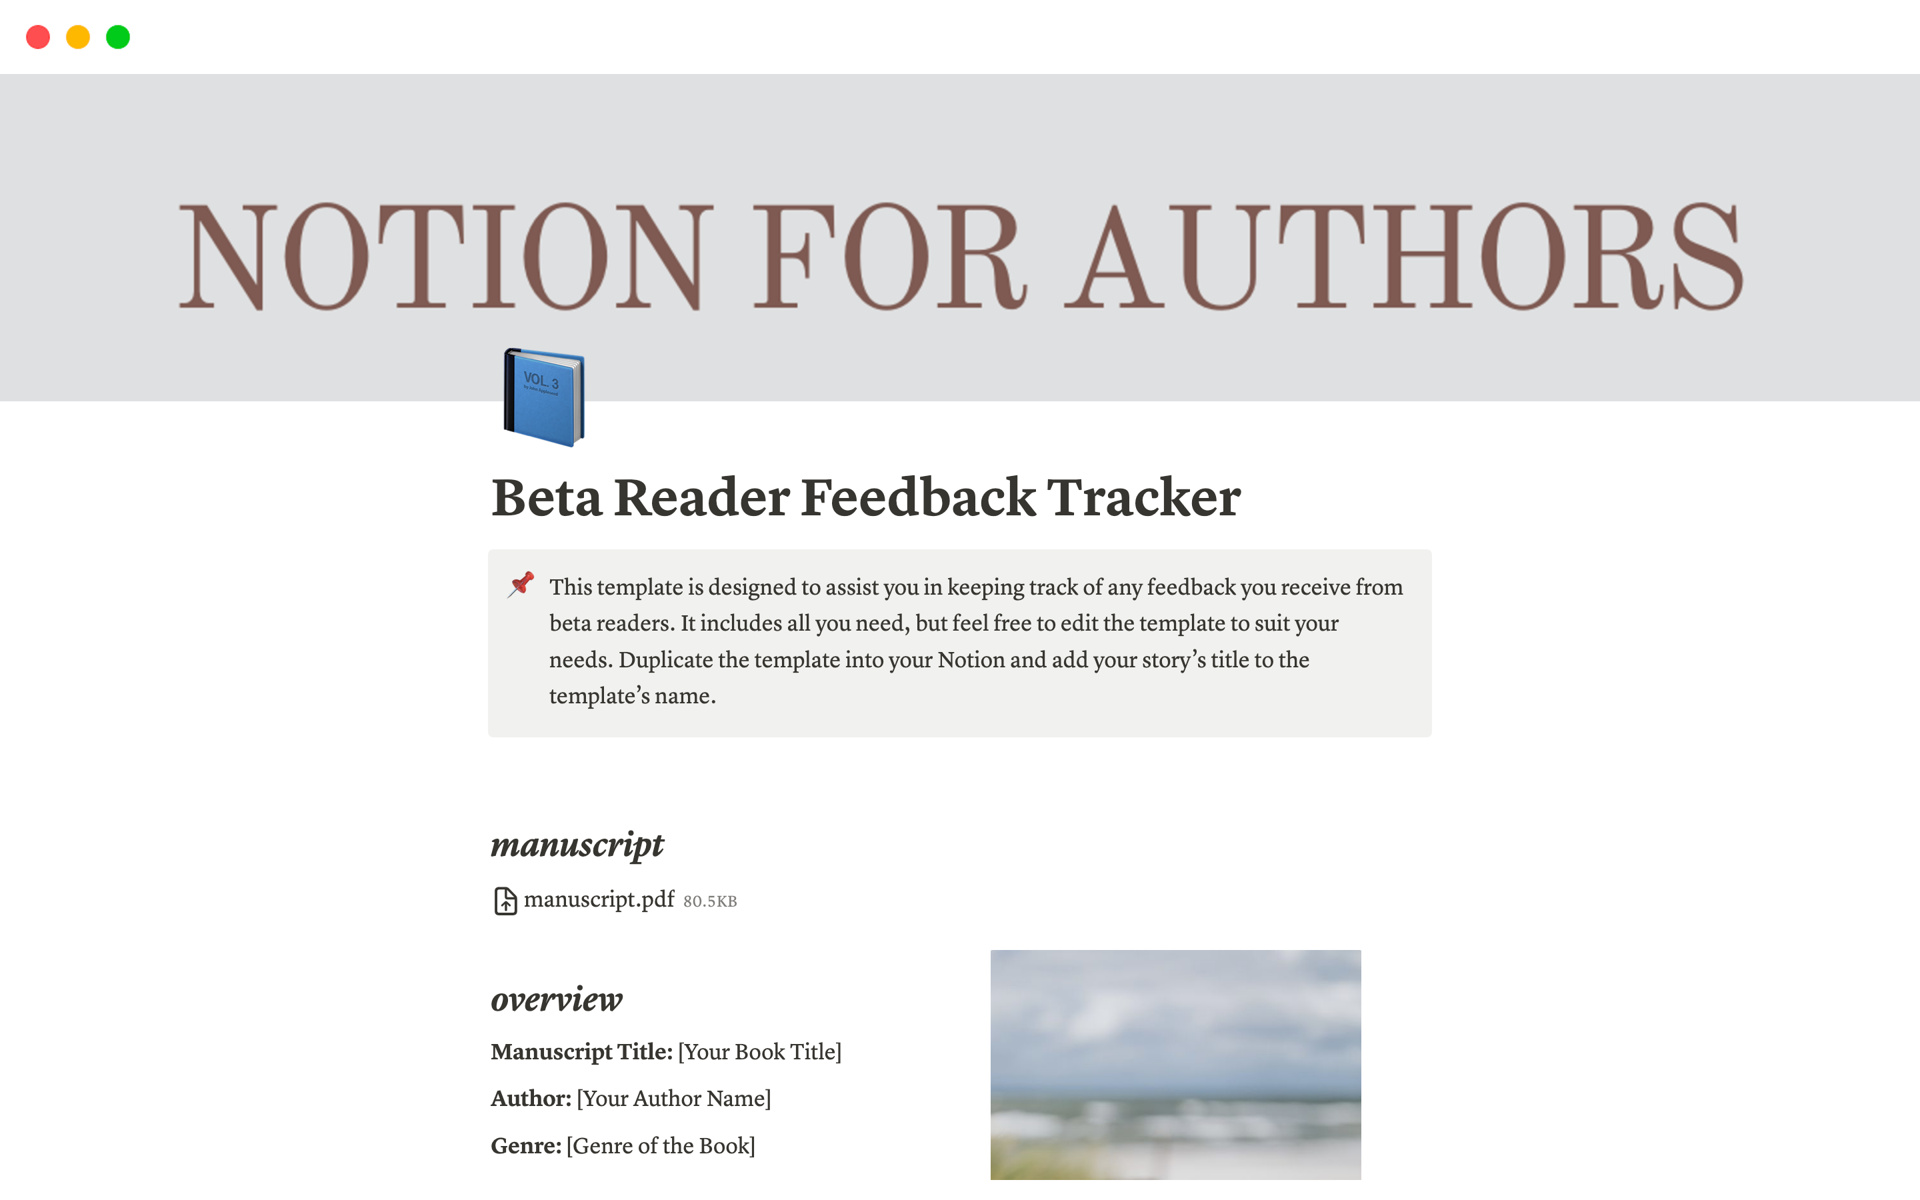 En förhandsgranskning av mallen för Beta Reader Feedback Tracker